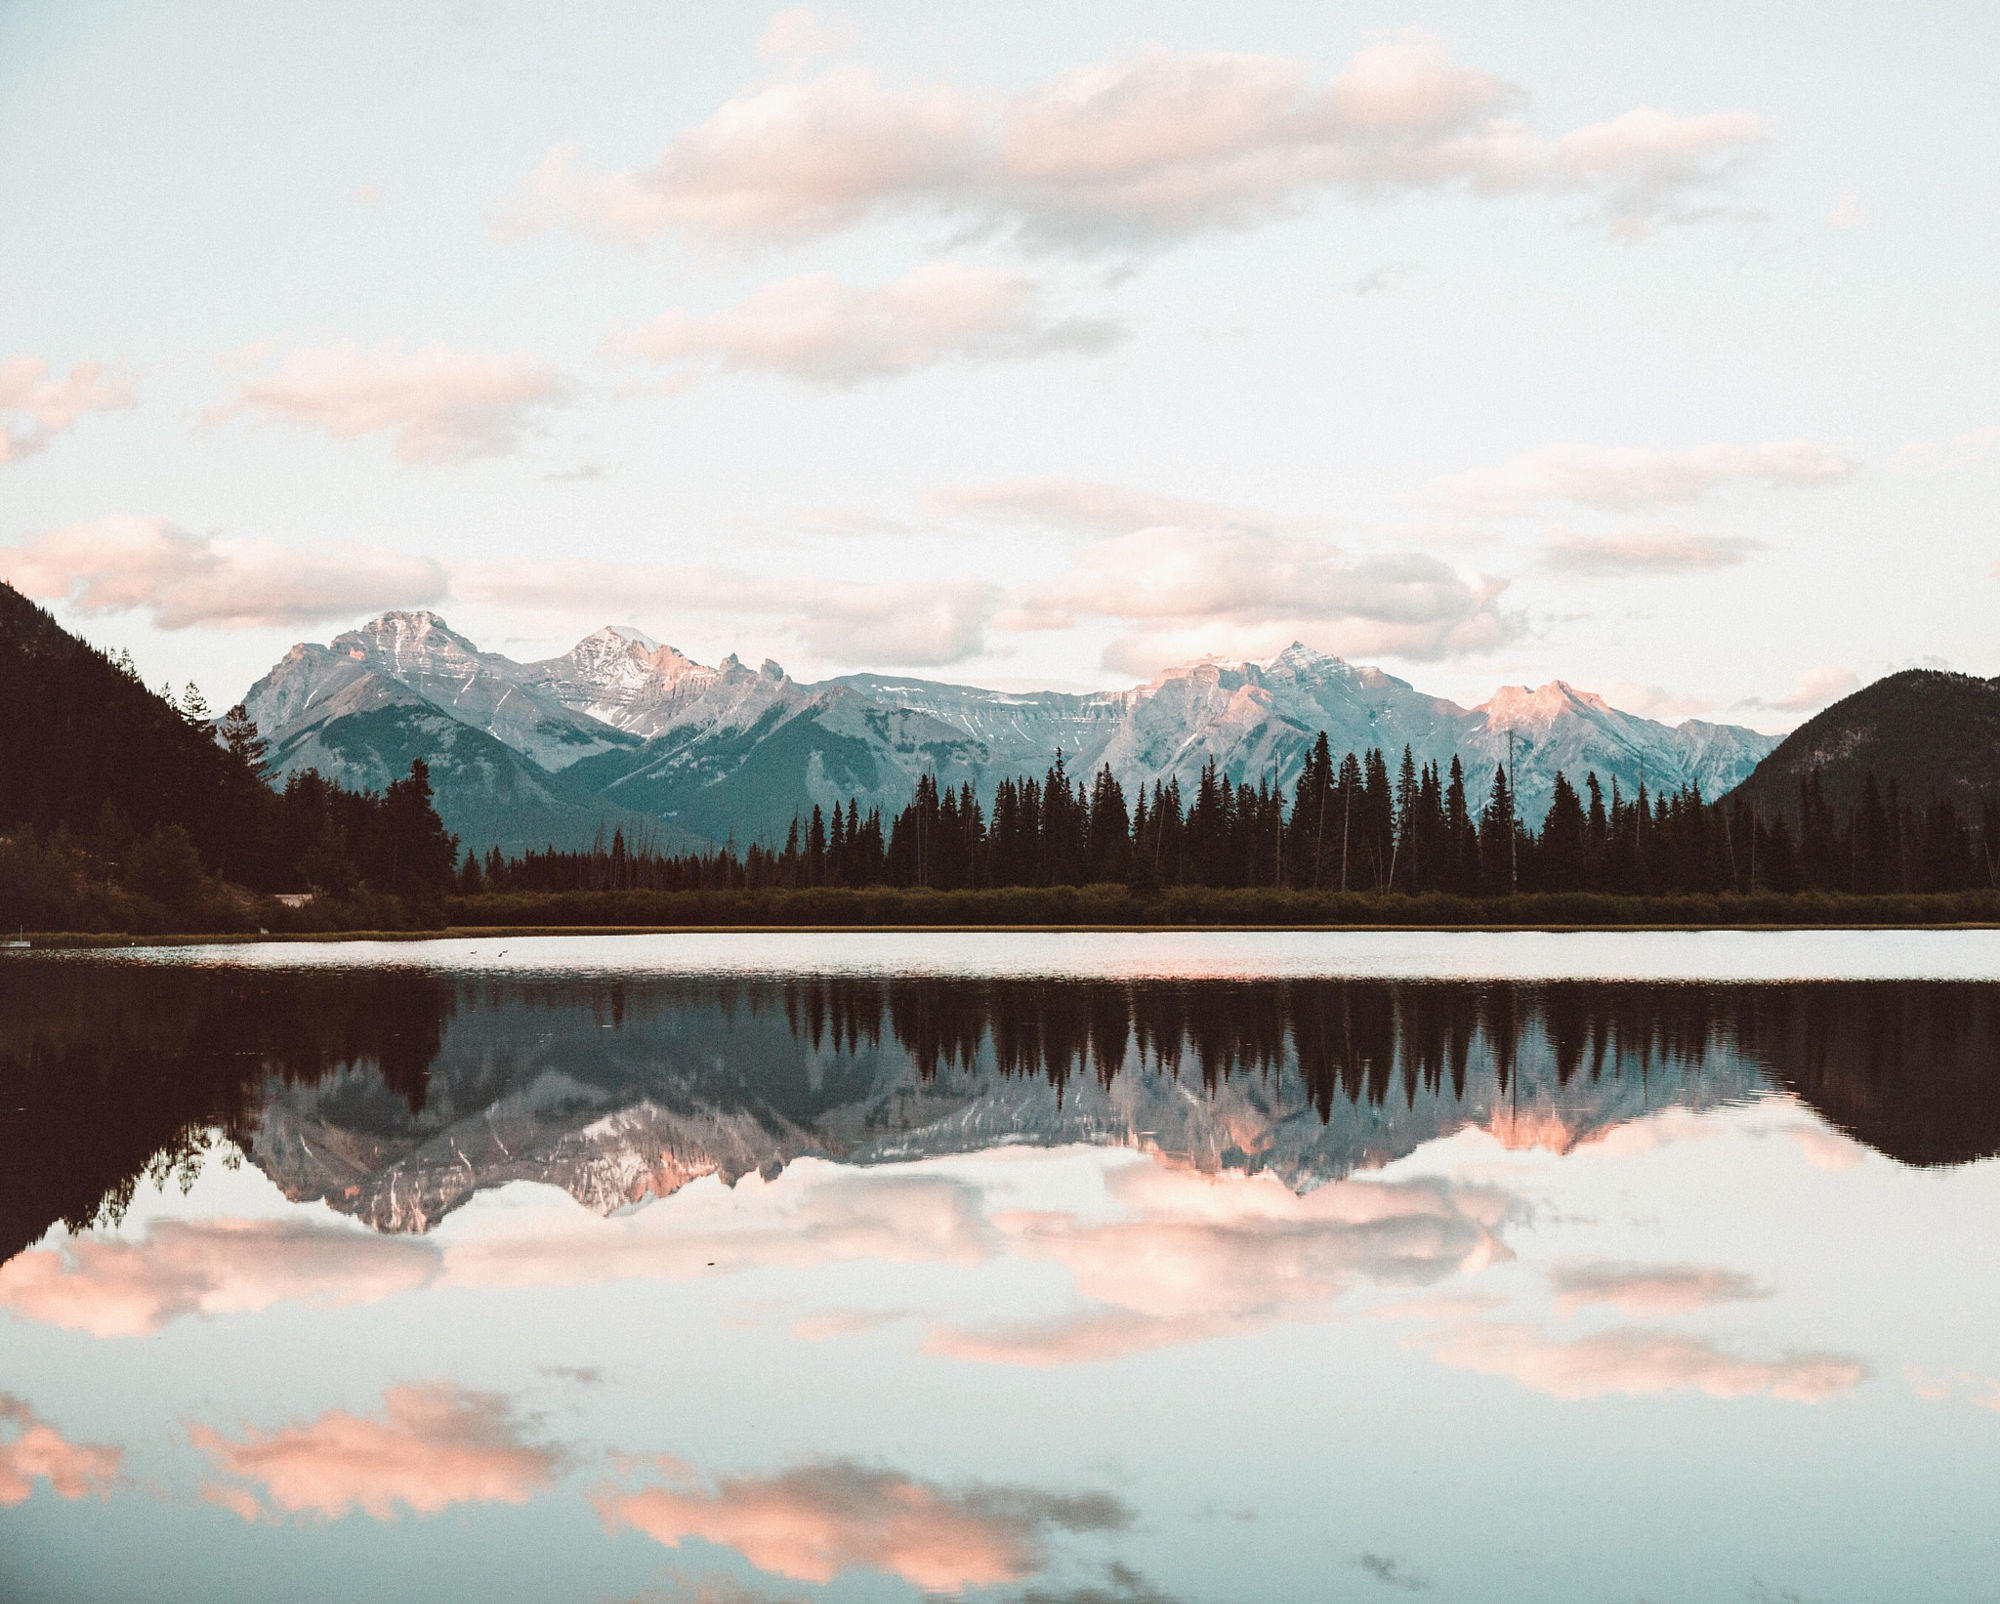 Vermillion Lakes sunset in Banff, Alberta.